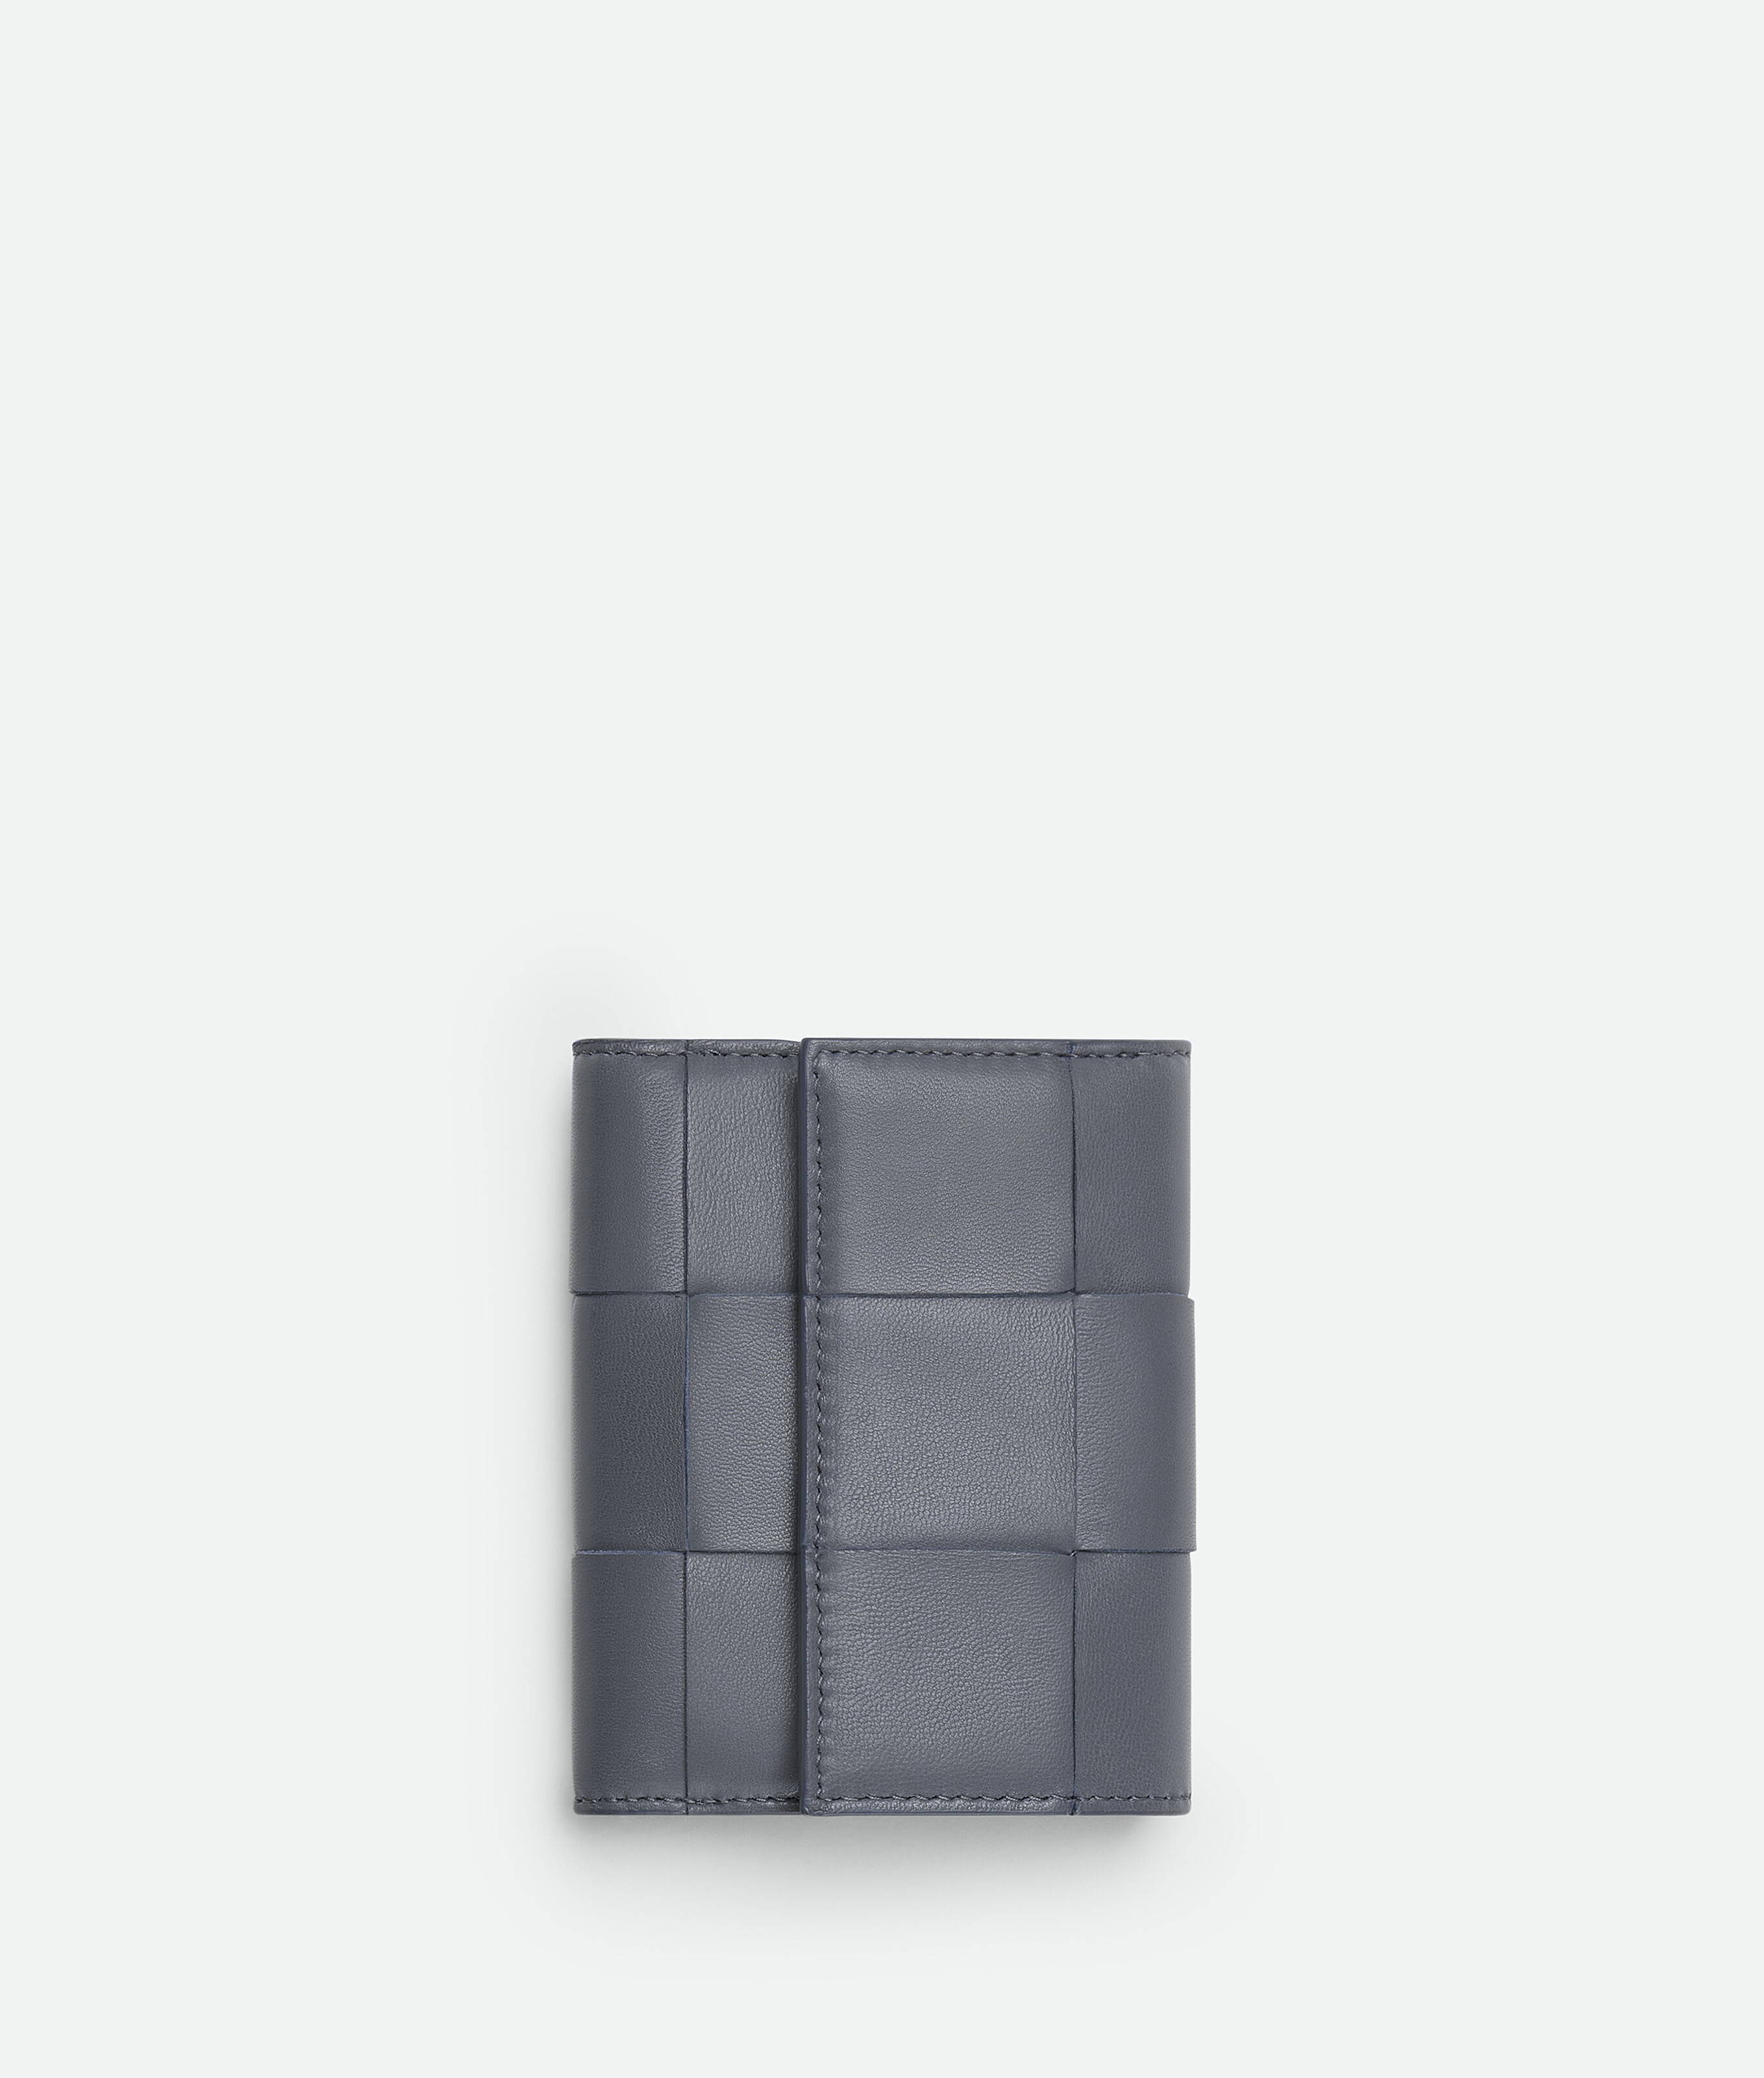 サンダーカセット 三つ折りファスナーウォレット| Bottega Veneta